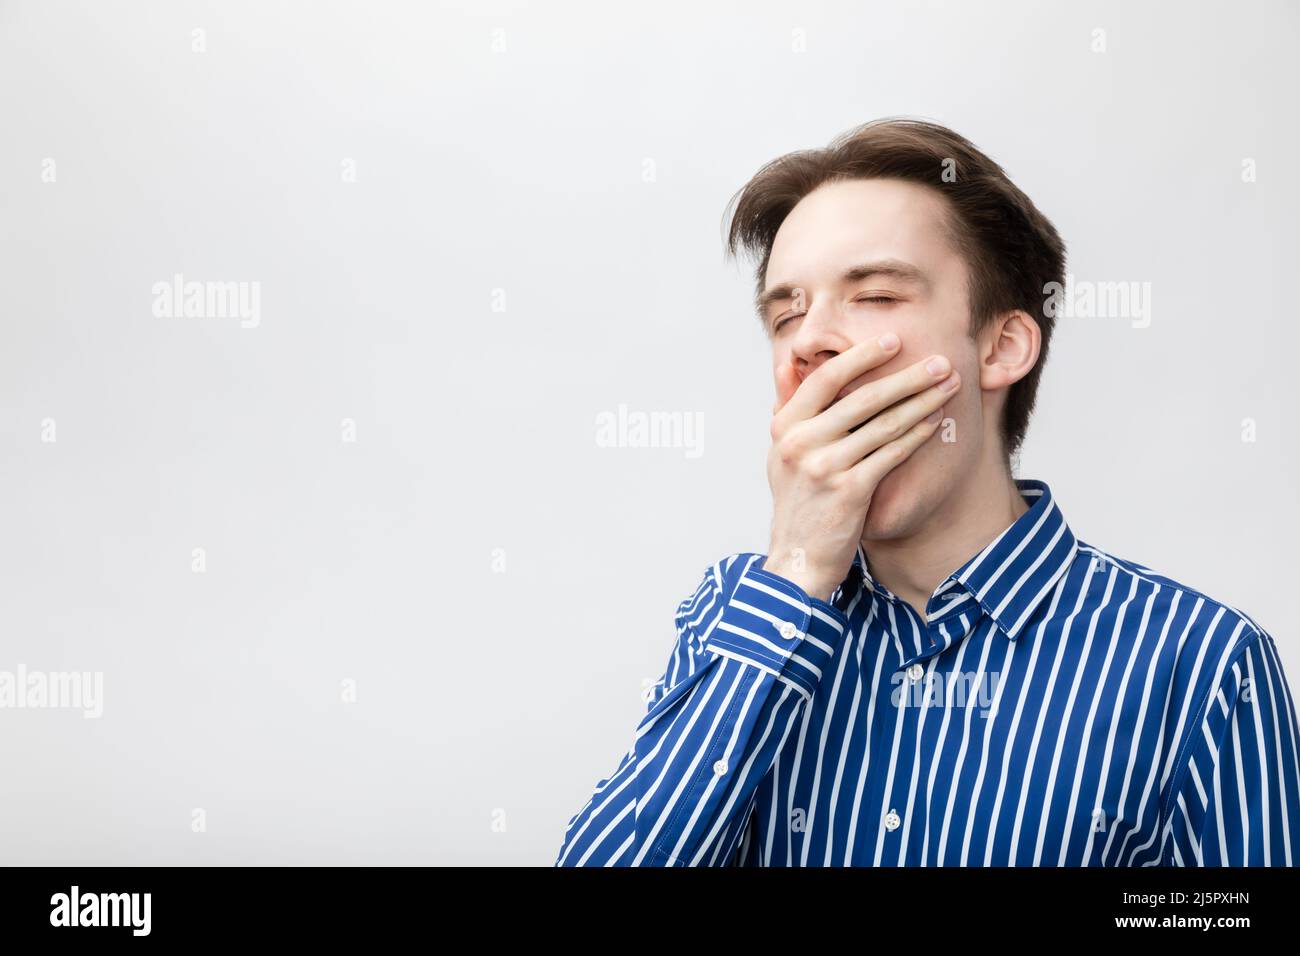 Junger Mann mit blau-weißem gestreiftem Knopfhemd, das den offenen Mund mit der Hand bedeckt, während er gähnte. Studio auf grauem Hintergrund aufgenommen Stockfoto